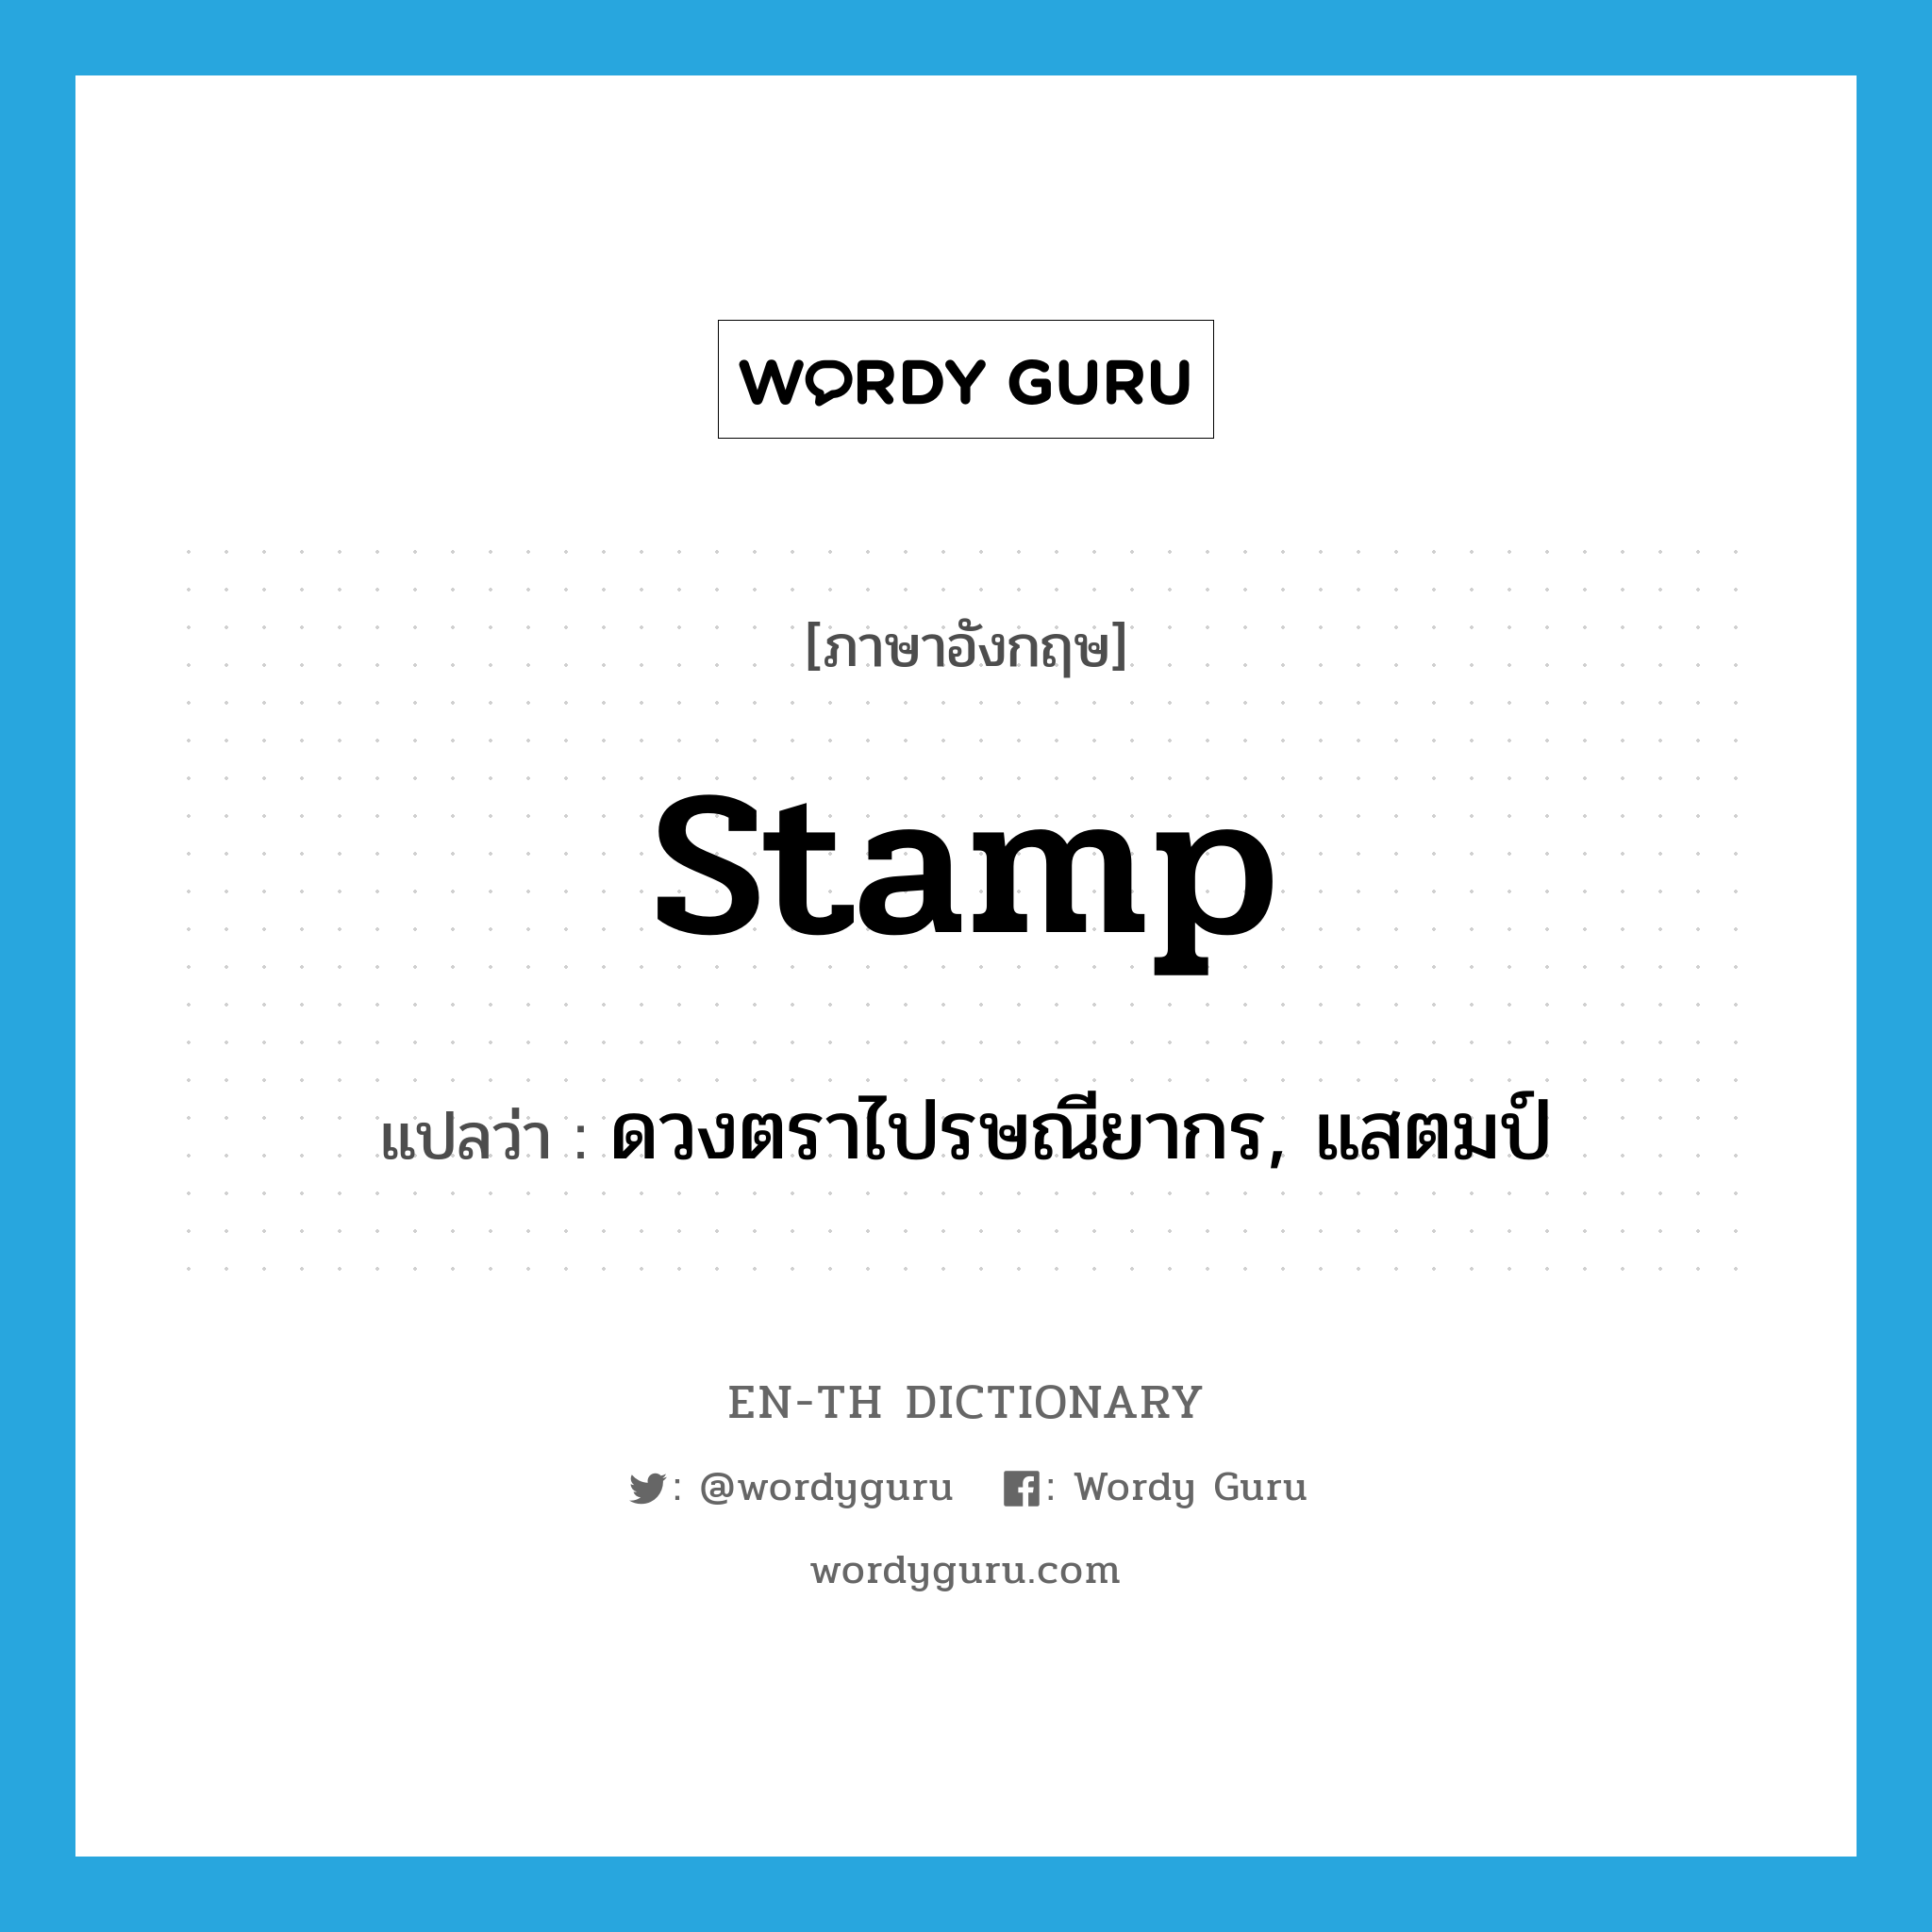 stamp แปลว่า?, คำศัพท์ภาษาอังกฤษ stamp แปลว่า ดวงตราไปรษณียากร, แสตมป์ ประเภท N หมวด N